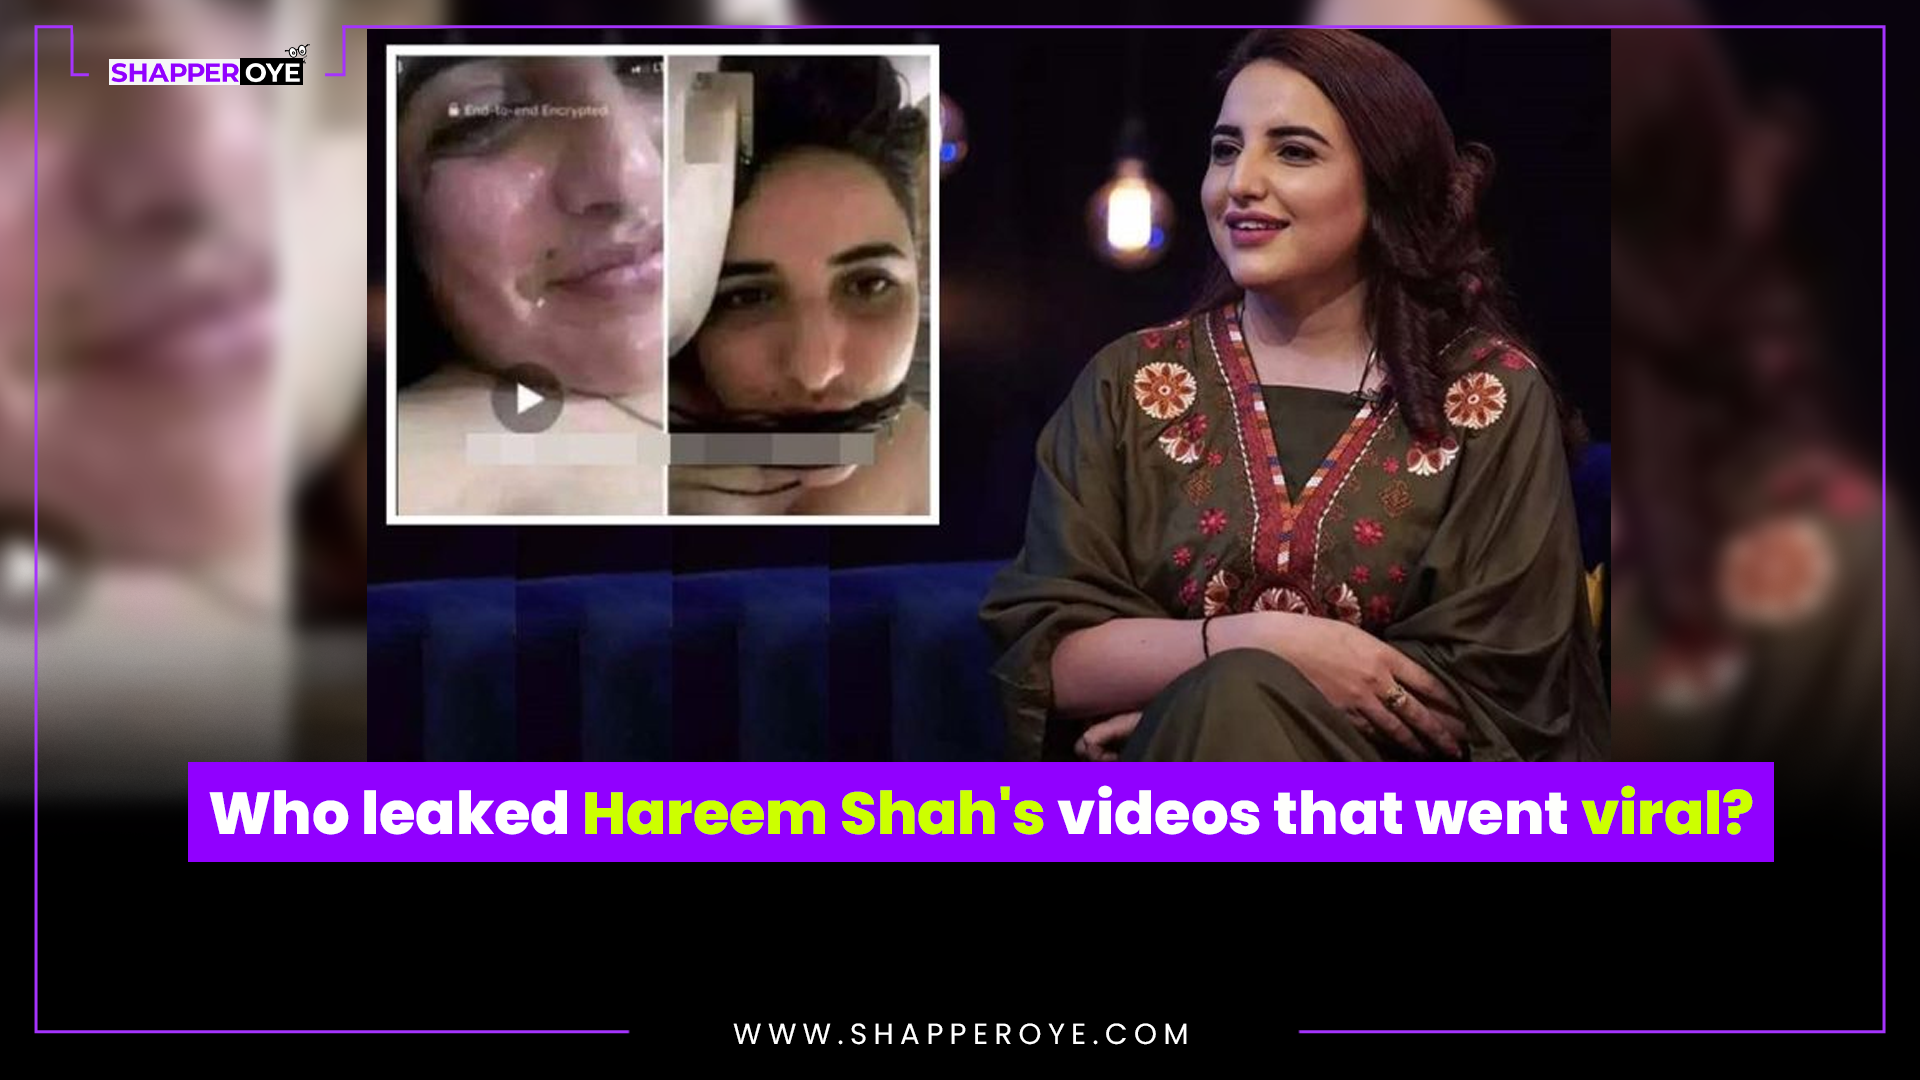 Hareem Shah's videos